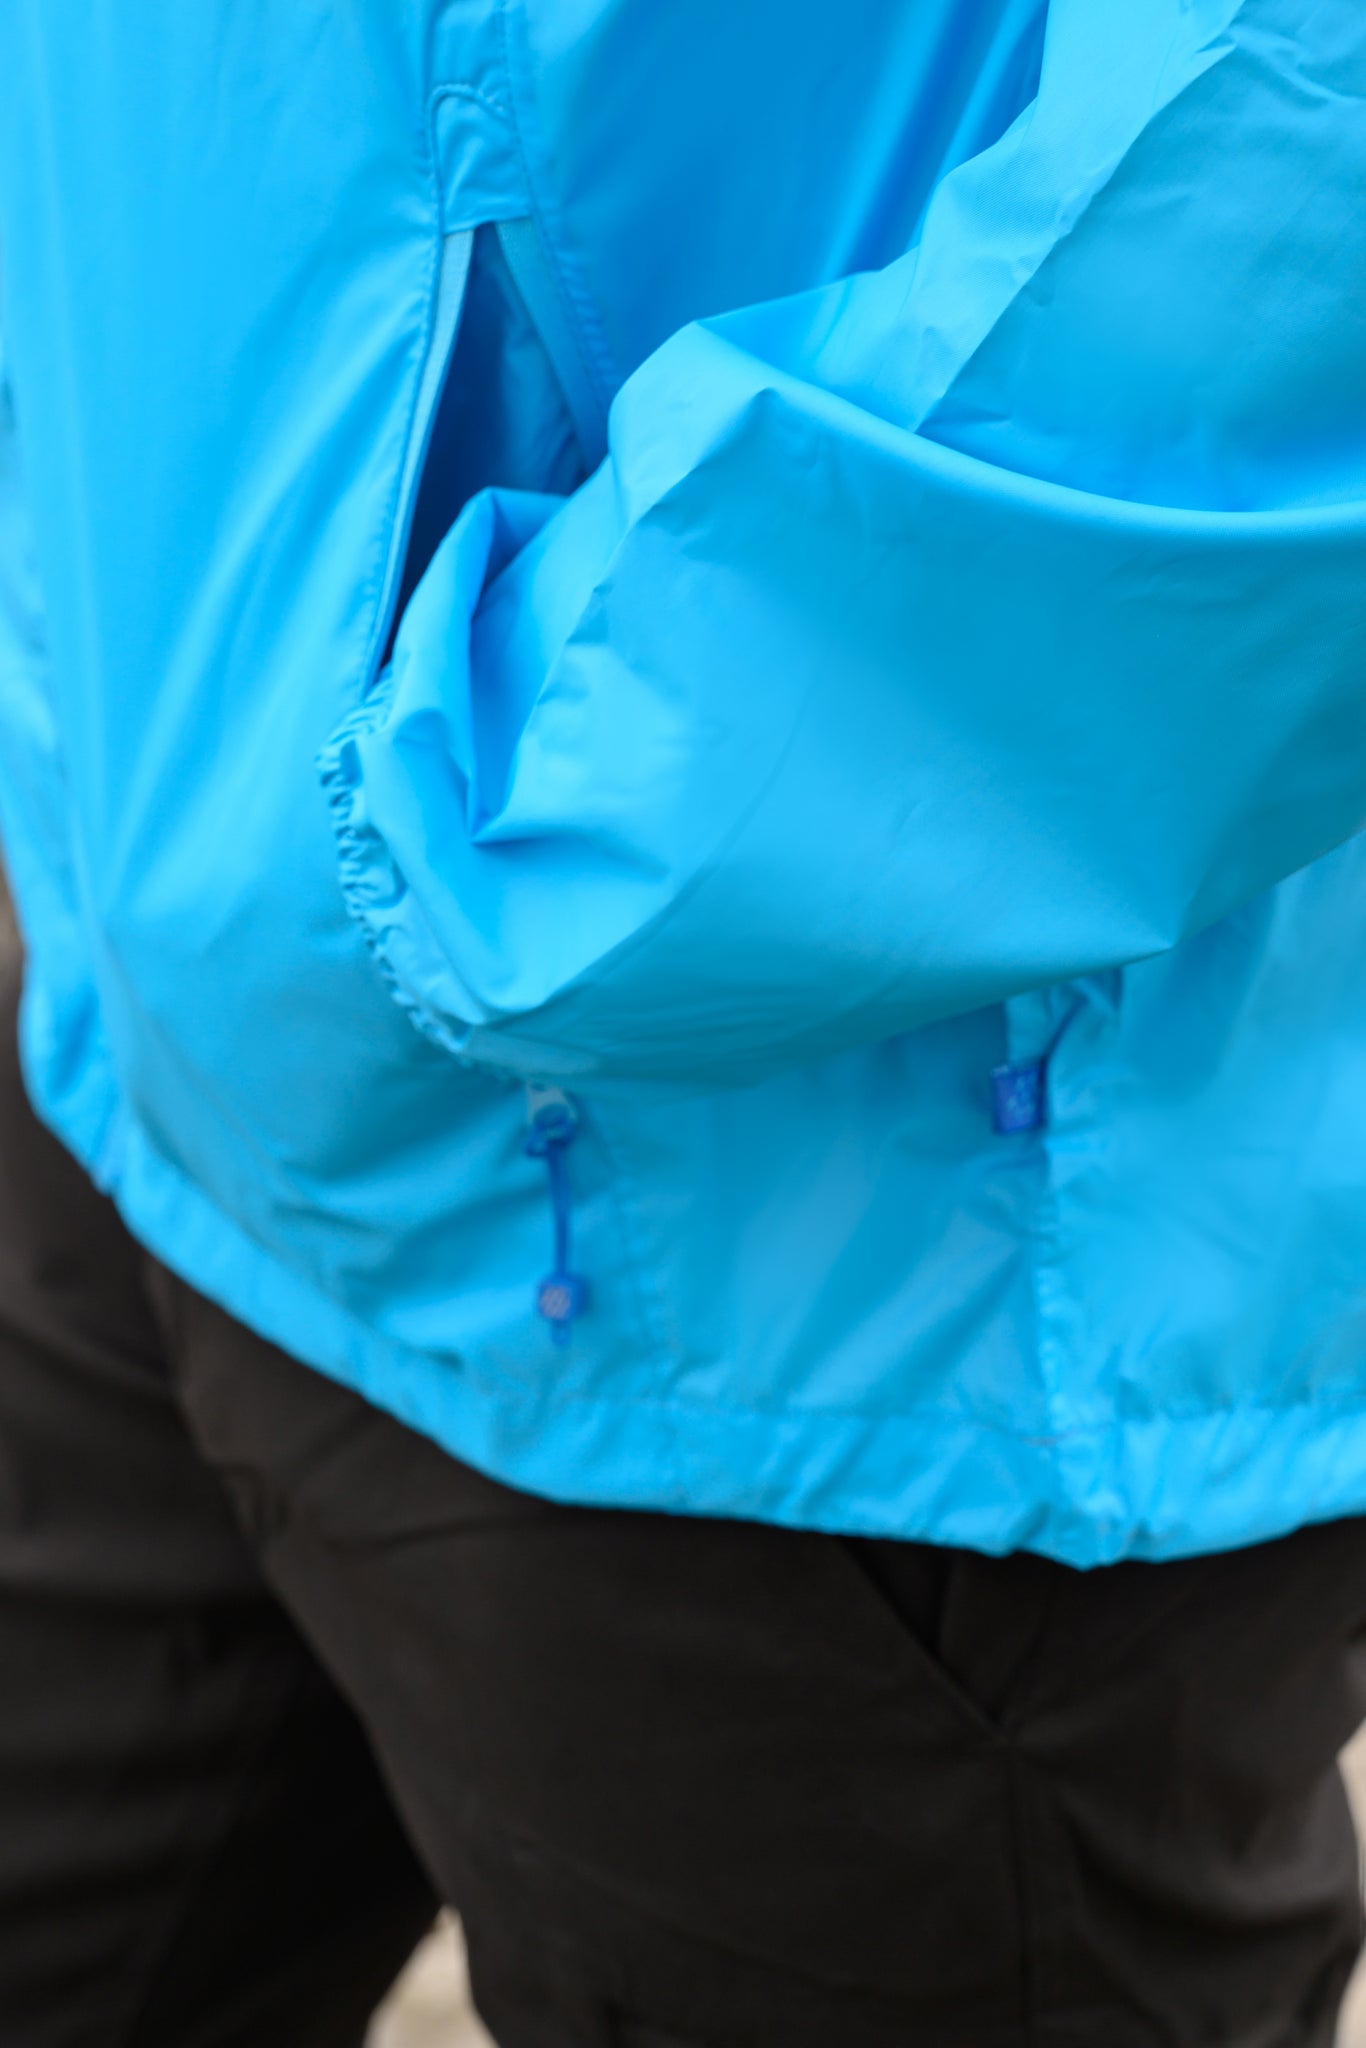 Origin Packable Waterproof Jacket - Neon Blue Tonal Zip